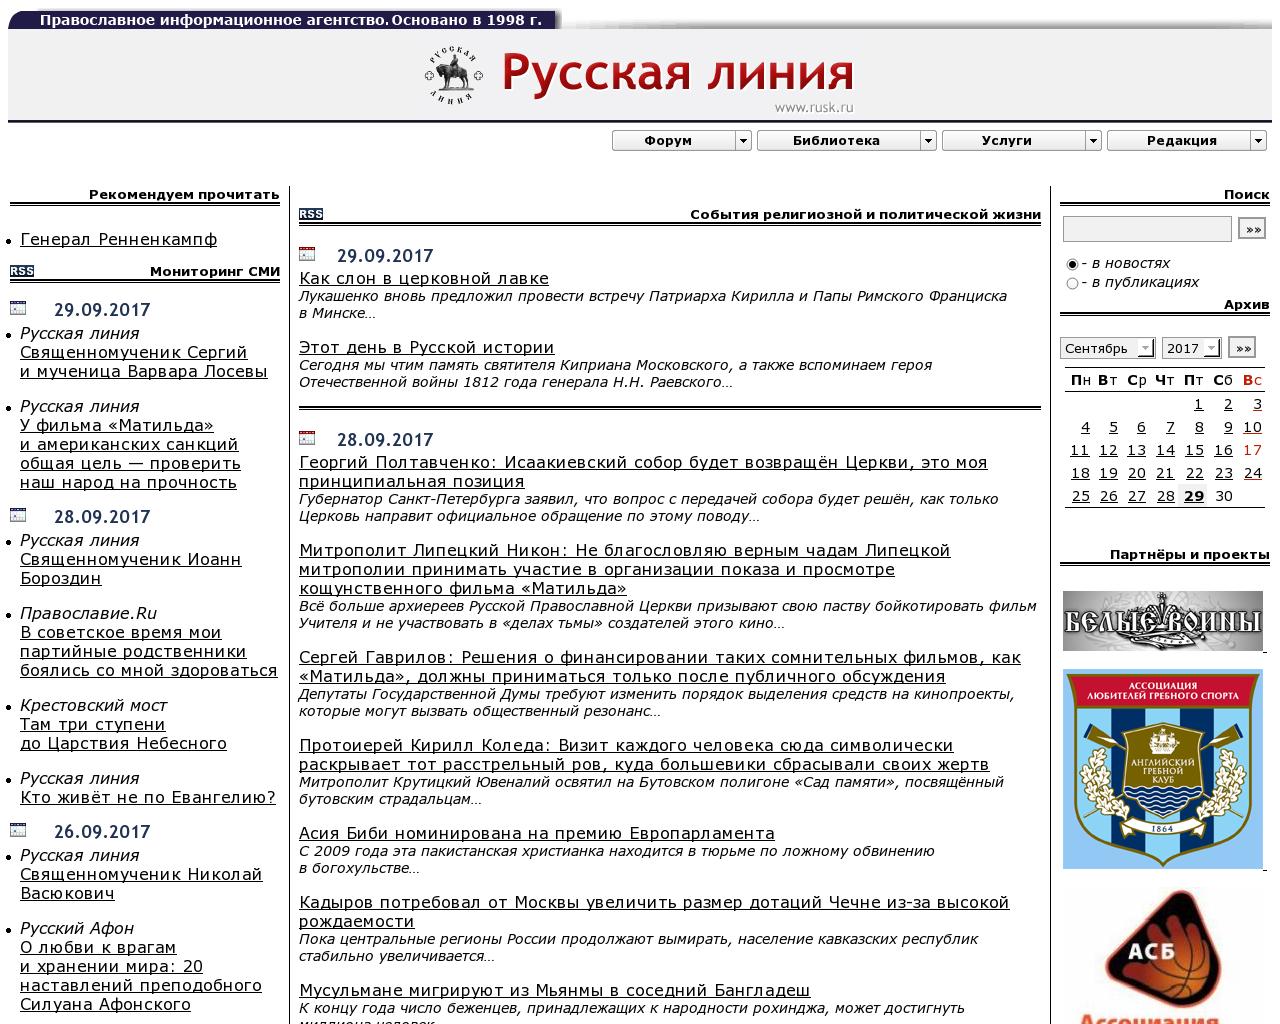 Изображение сайта russk.ru в разрешении 1280x1024